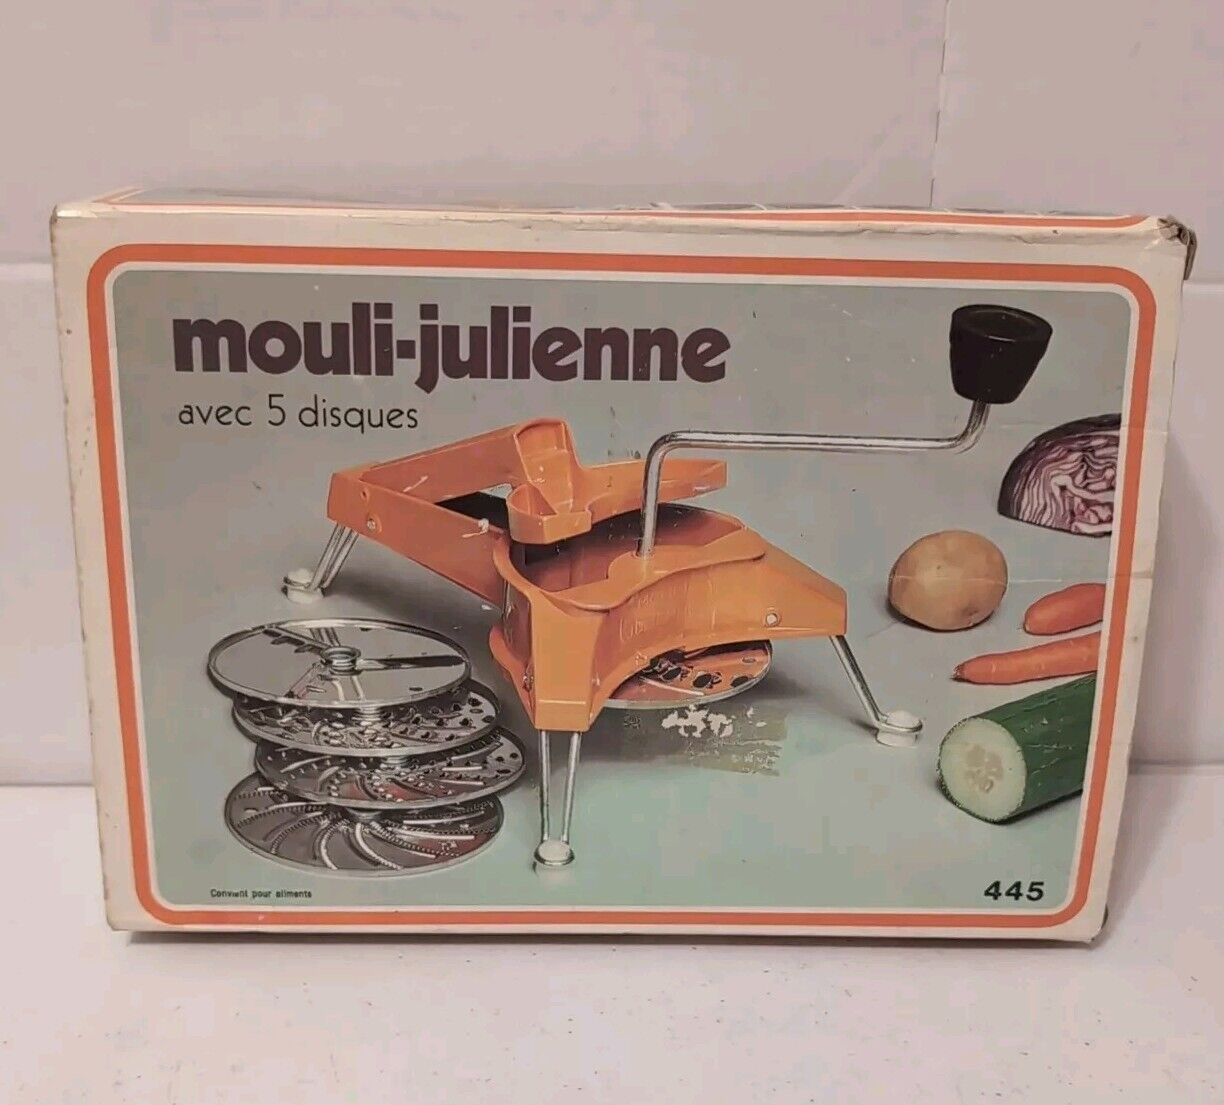 Vintage Moulinex 445 Mouli-Julienne Vintage Food Shredder Slicer Complete